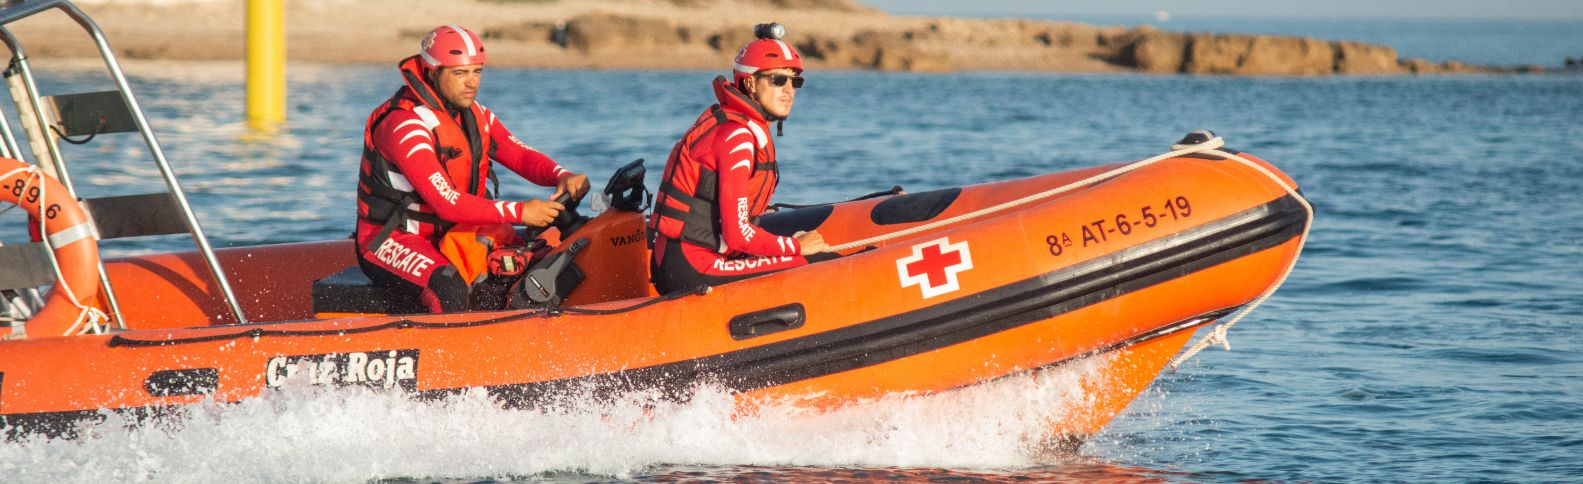 Cruz Roja inicia la temporada de verano con presencia en más de 225 playas